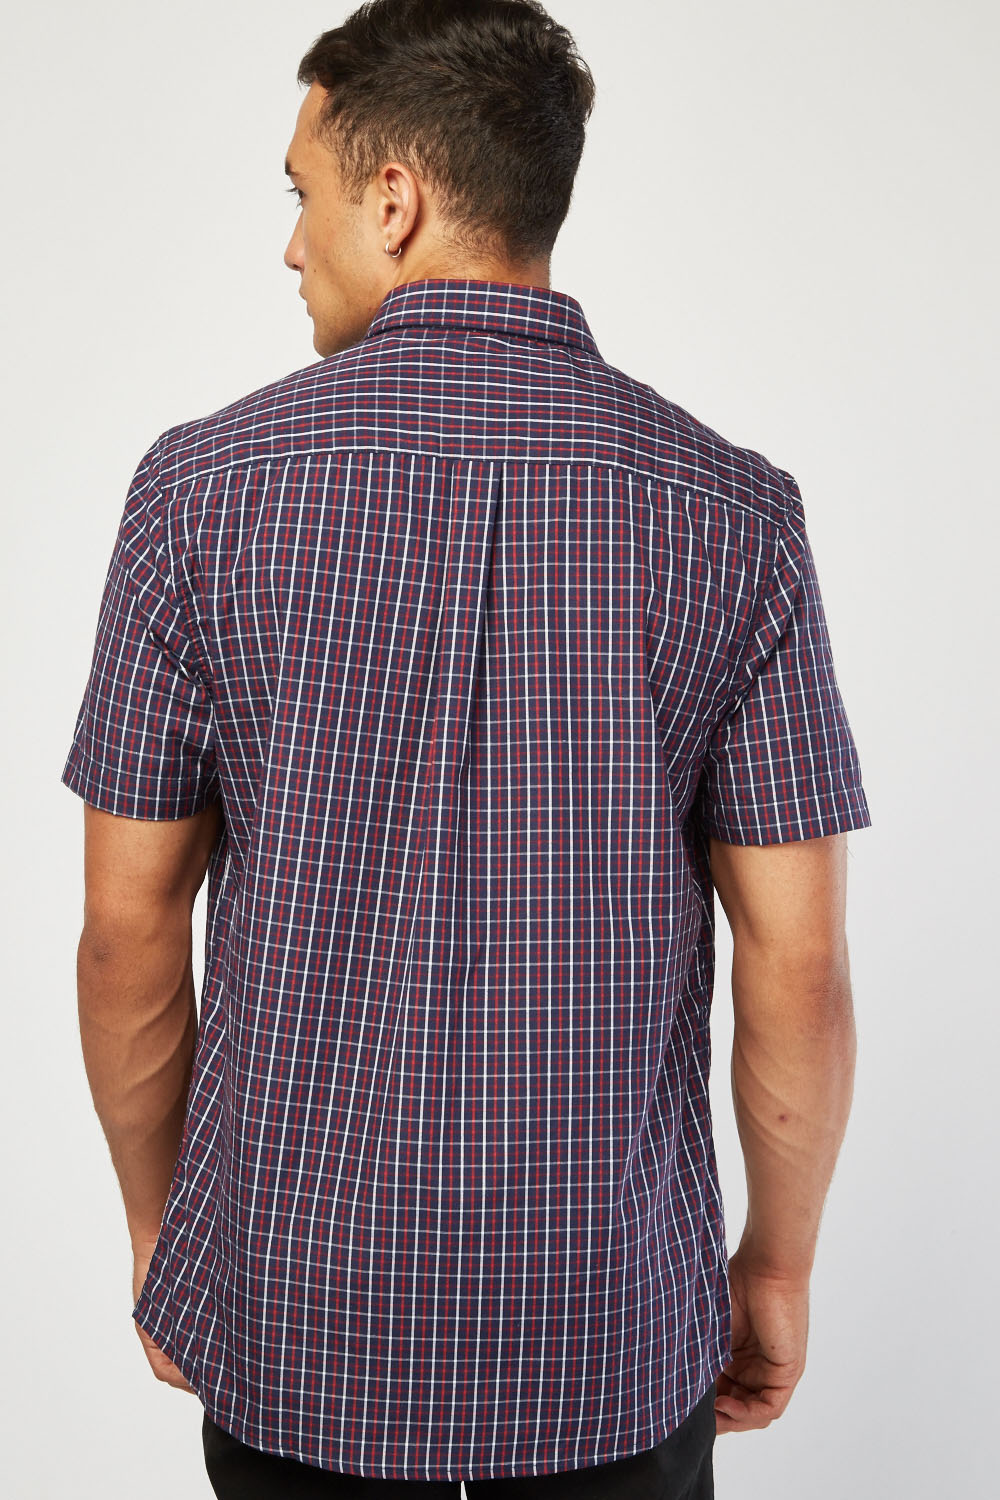 Casual Short Sleeve Check Shirt - Just $7